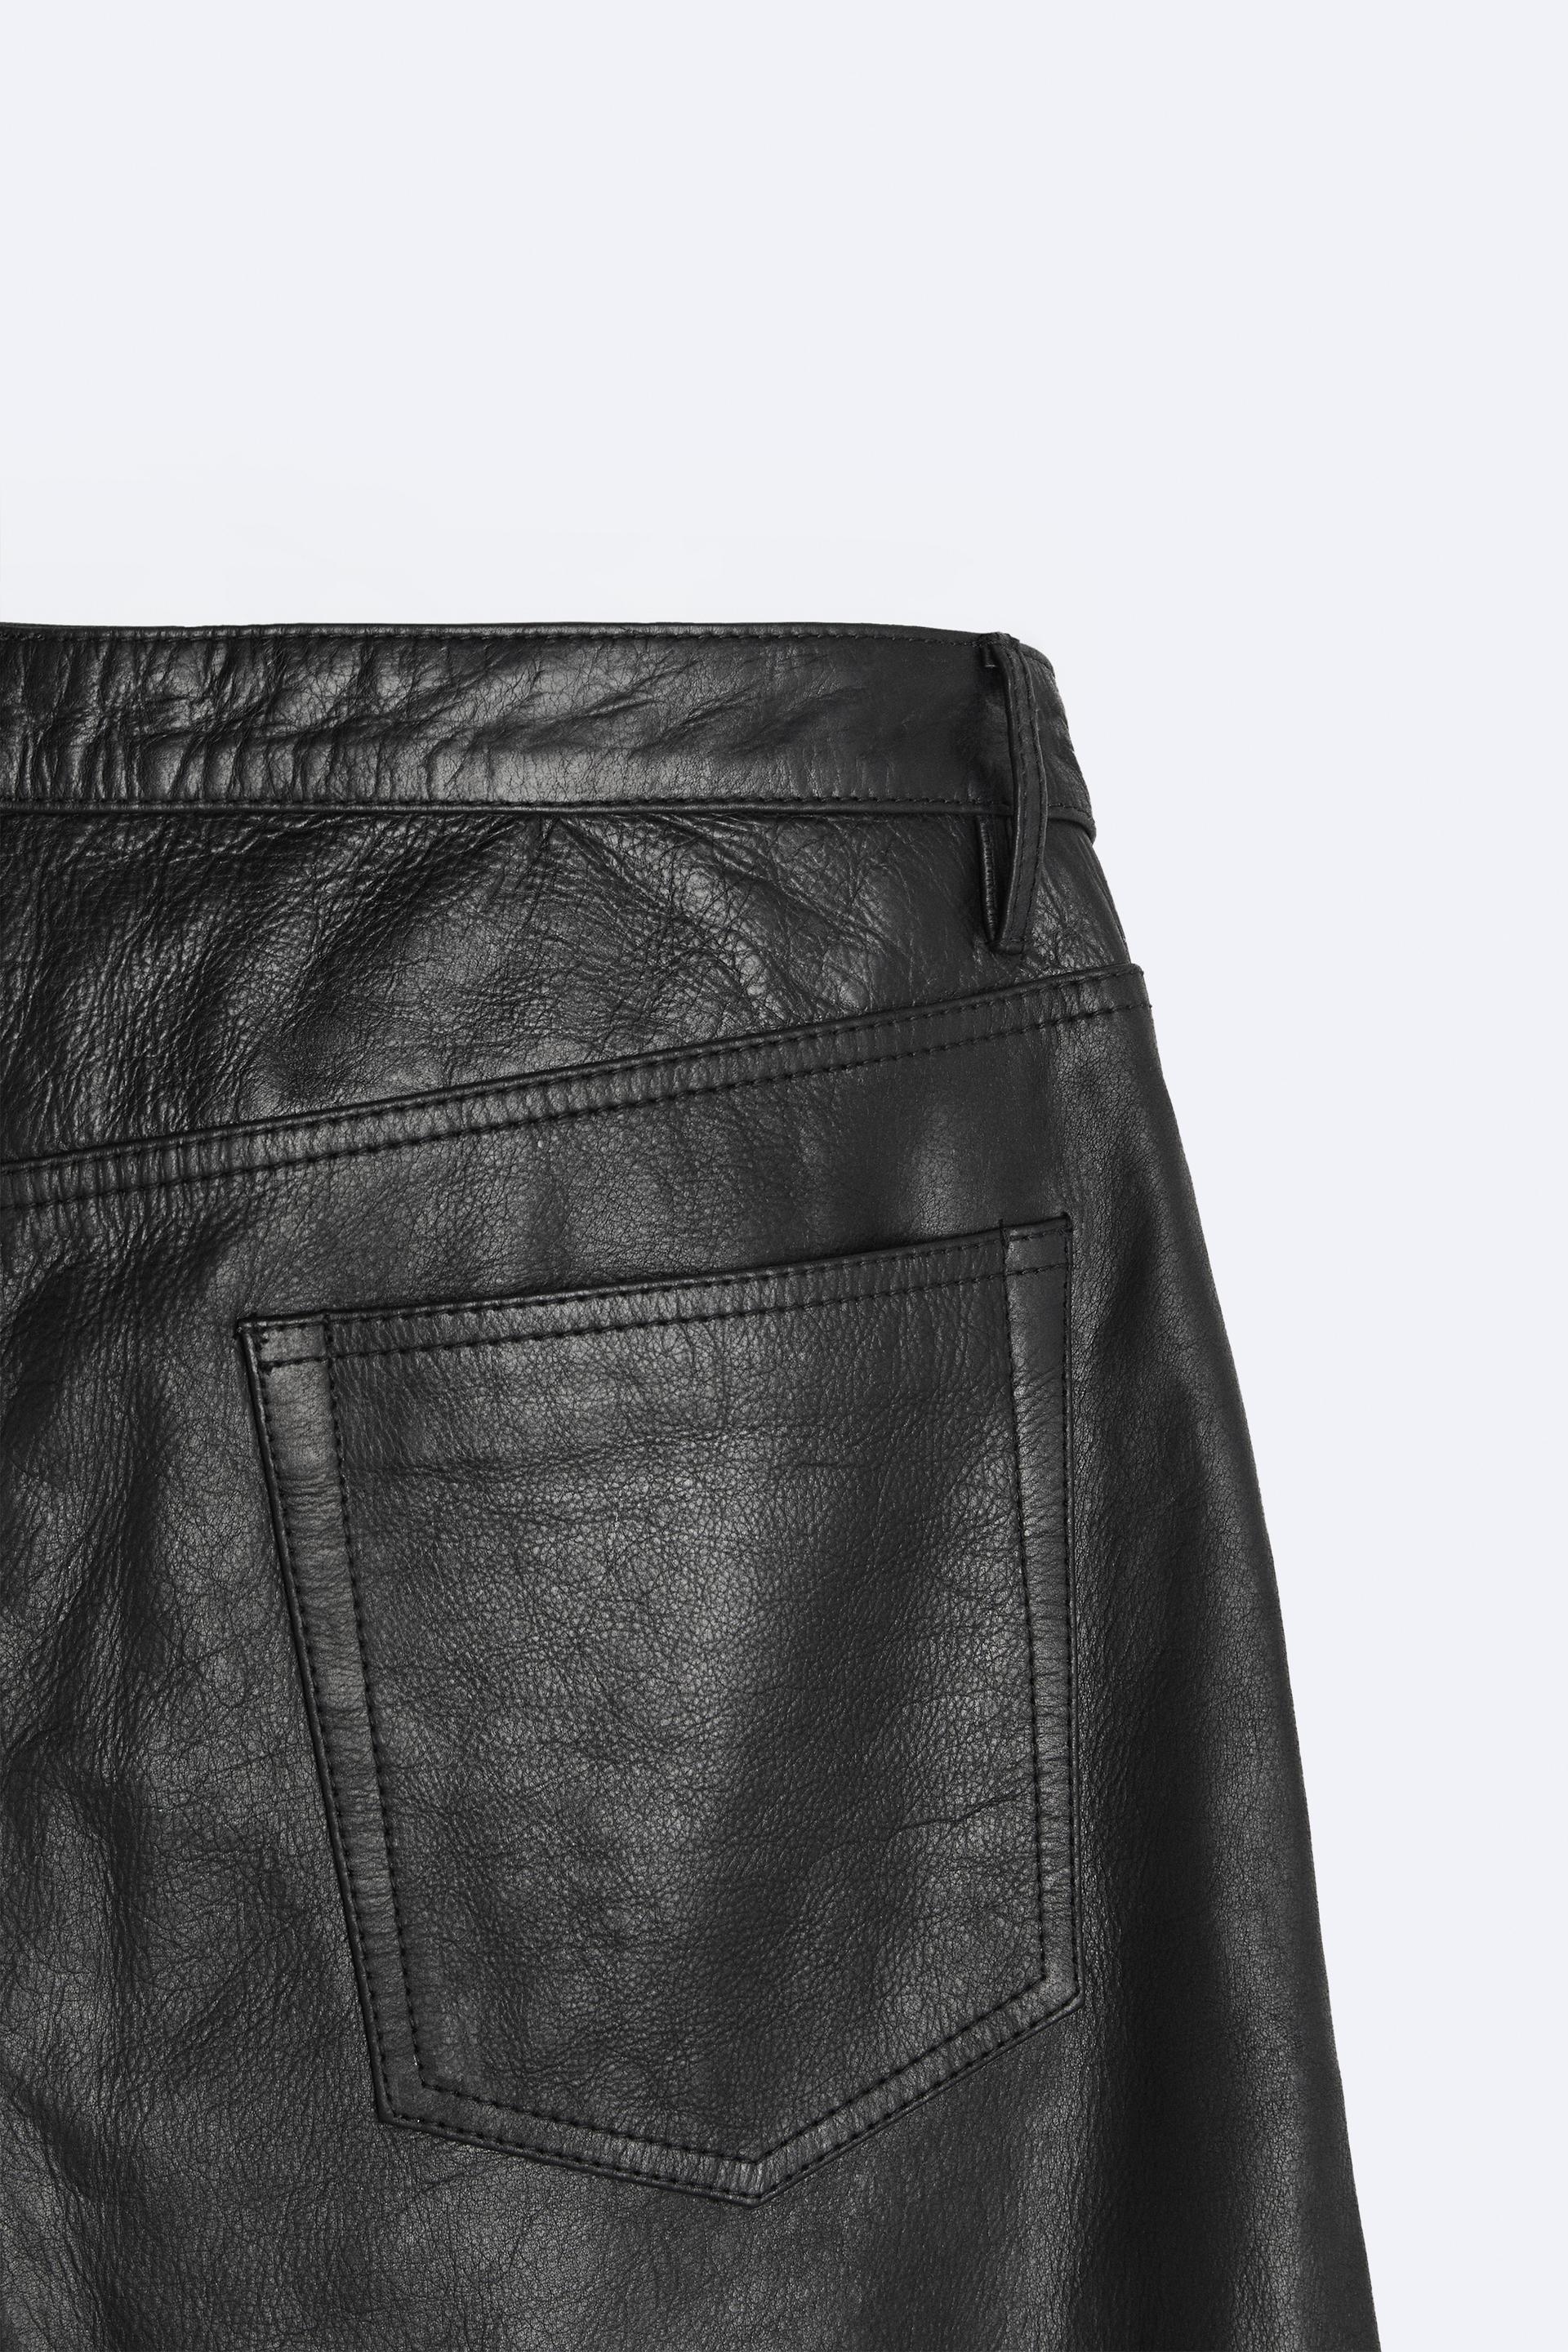 zara leather leggings #zaraleatherpants #zaraleatherleggings #leather